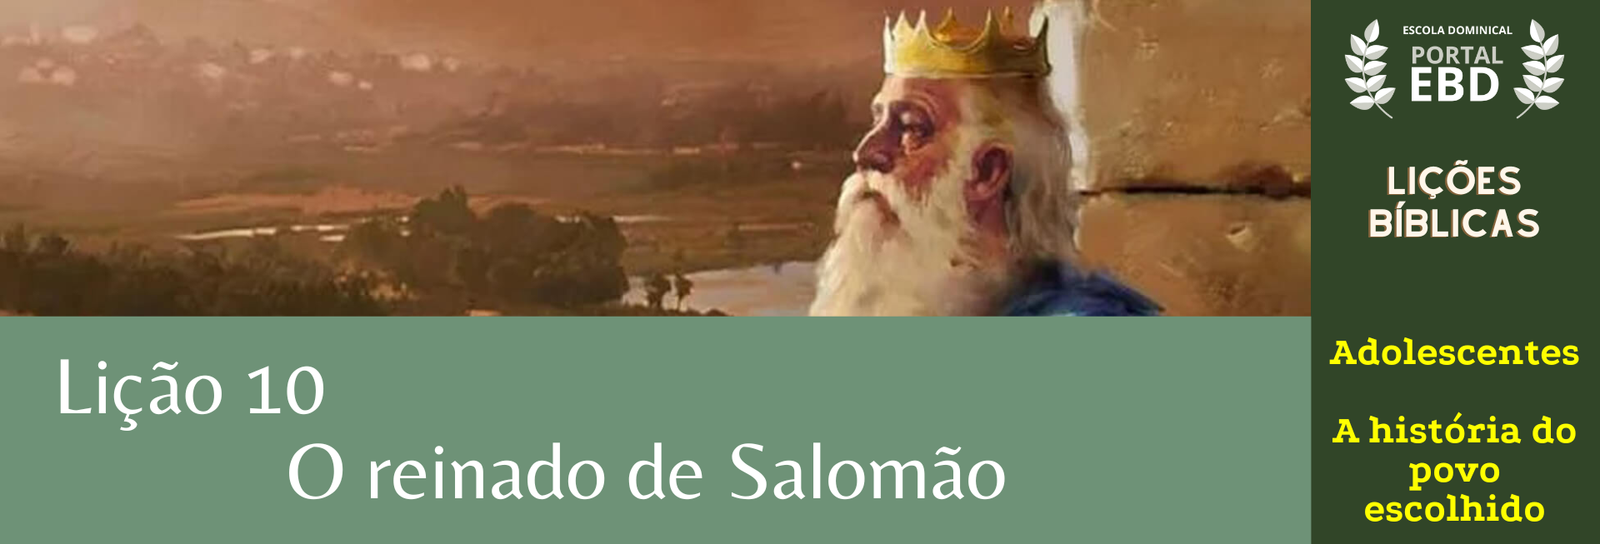 Lição 10 - O reinado de Salomão - SLIDES E VIDEOAULAS